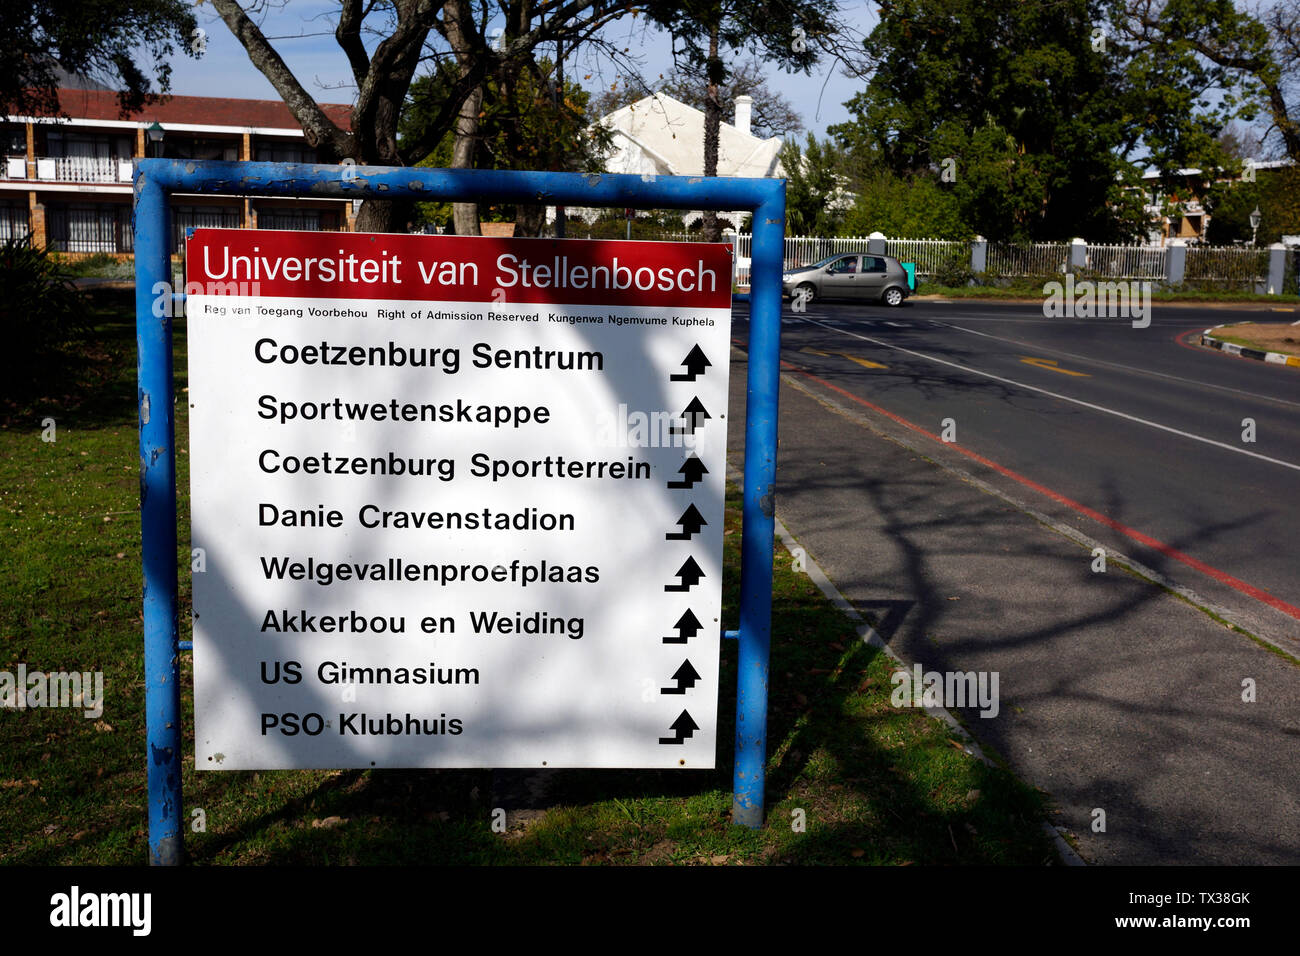 Coetzenburg stade de l'athlétisme, Université de Stellenbosch, Afrique du Sud. Banque D'Images